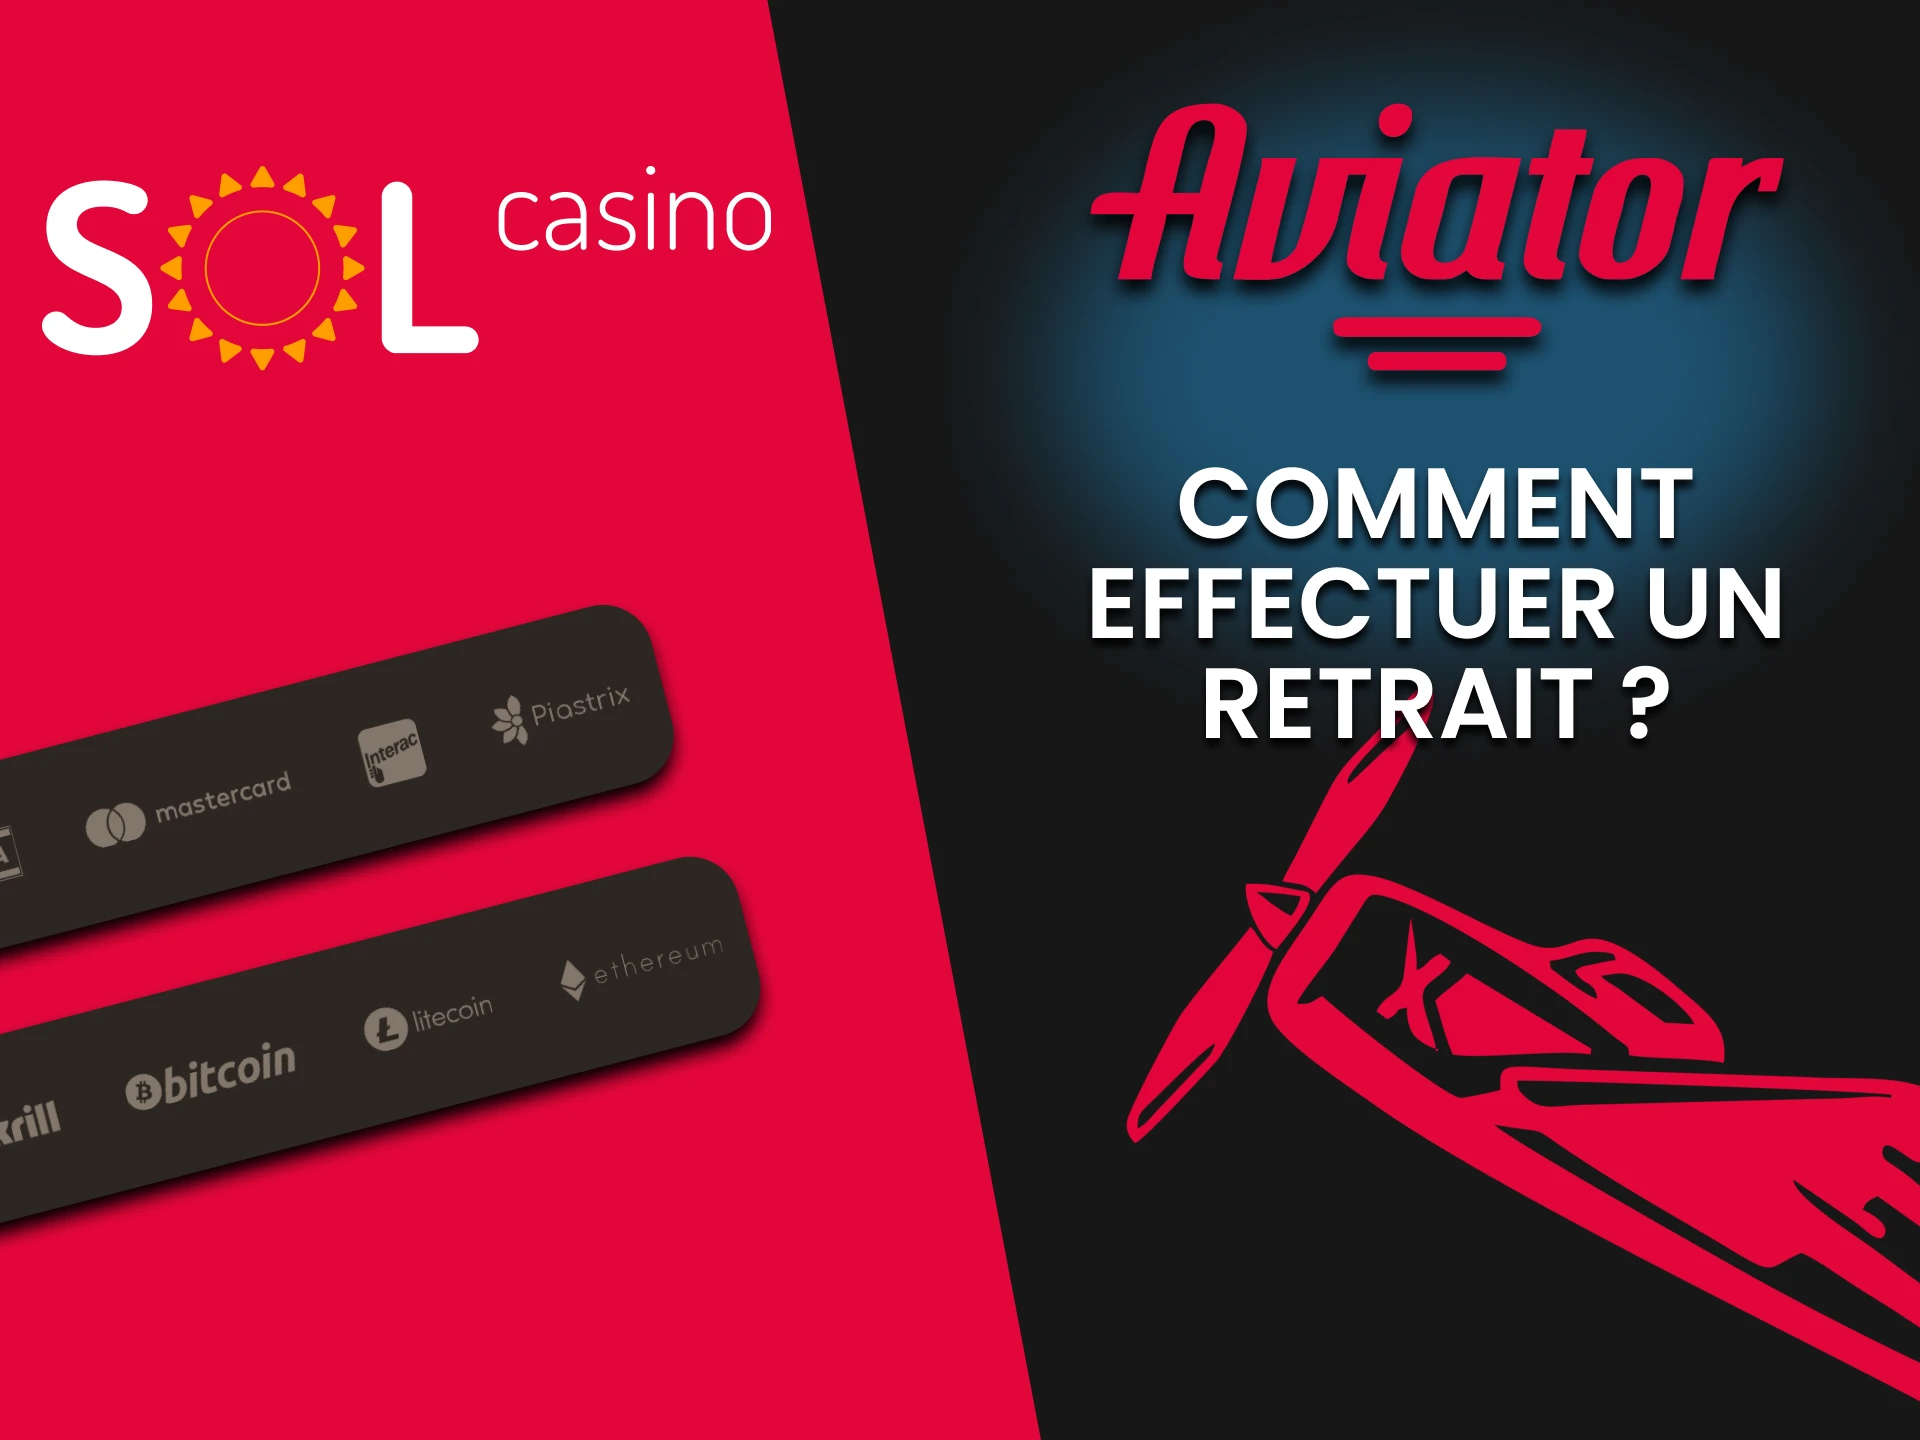 Choisissez votre méthode de retrait pour Aviator sur Sol Casino.